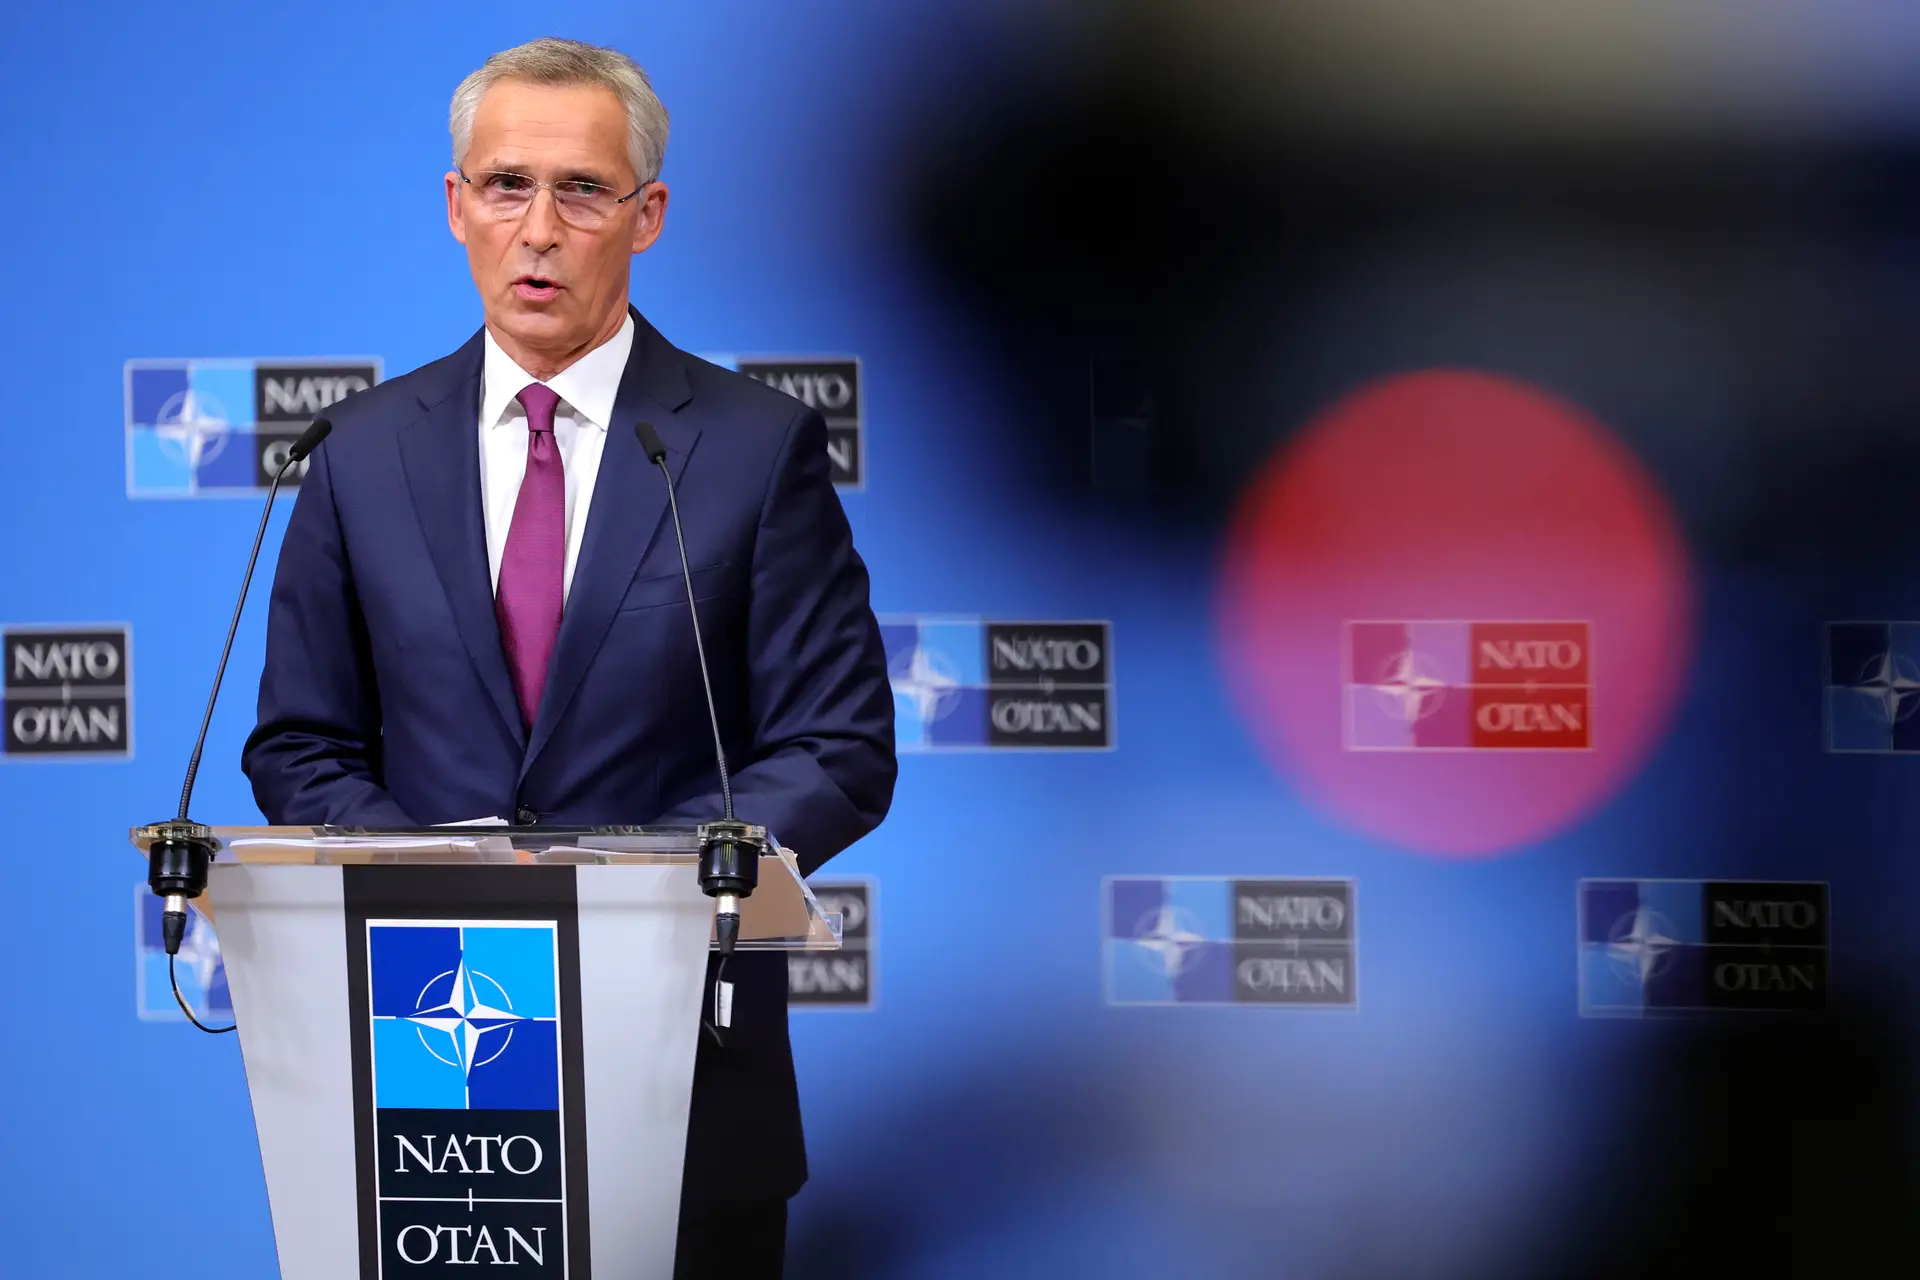 NATO enfrenta "ambiente de segurança mais complexo e imprevisível desde a Guerra Fria"